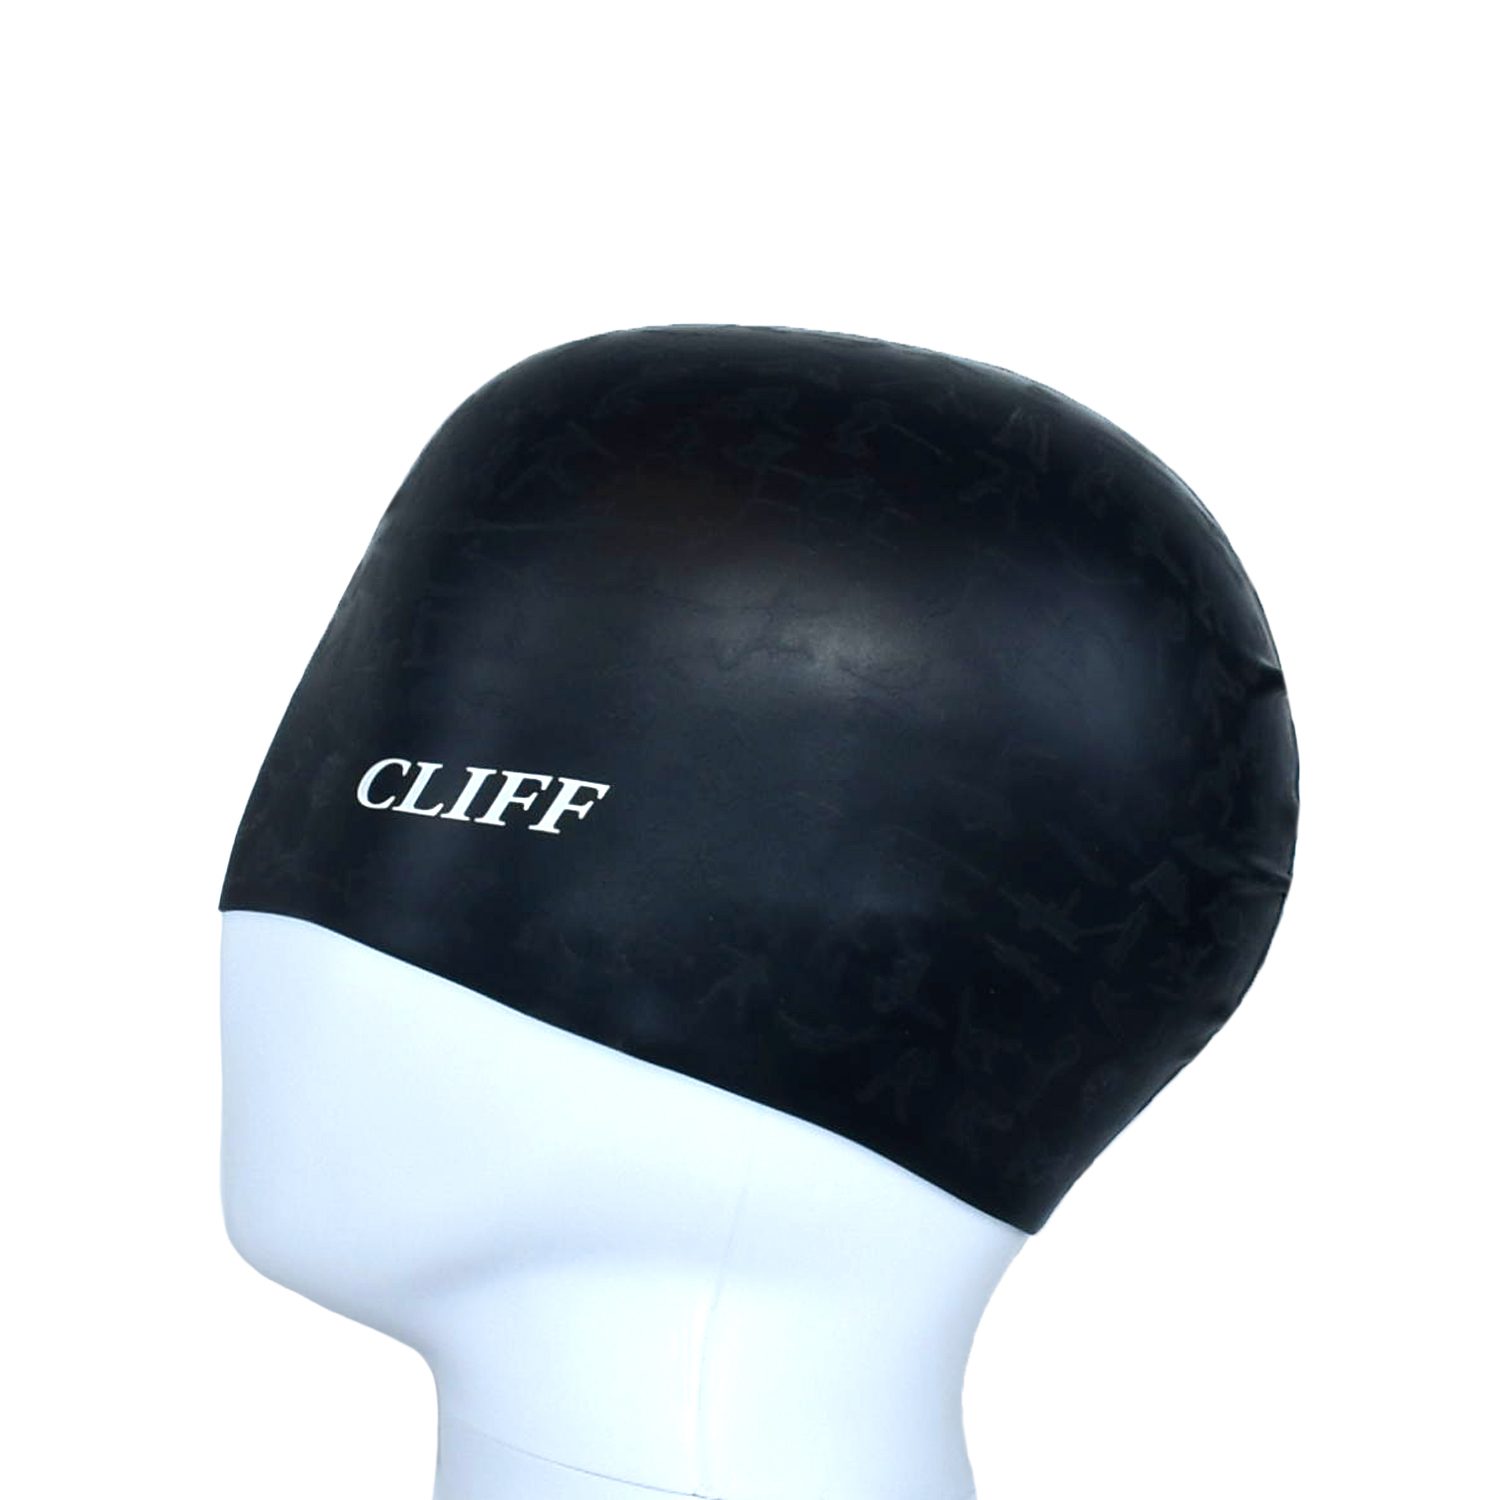 Шапочка для плавания CLIFF силиконовая, с рельефом, черная